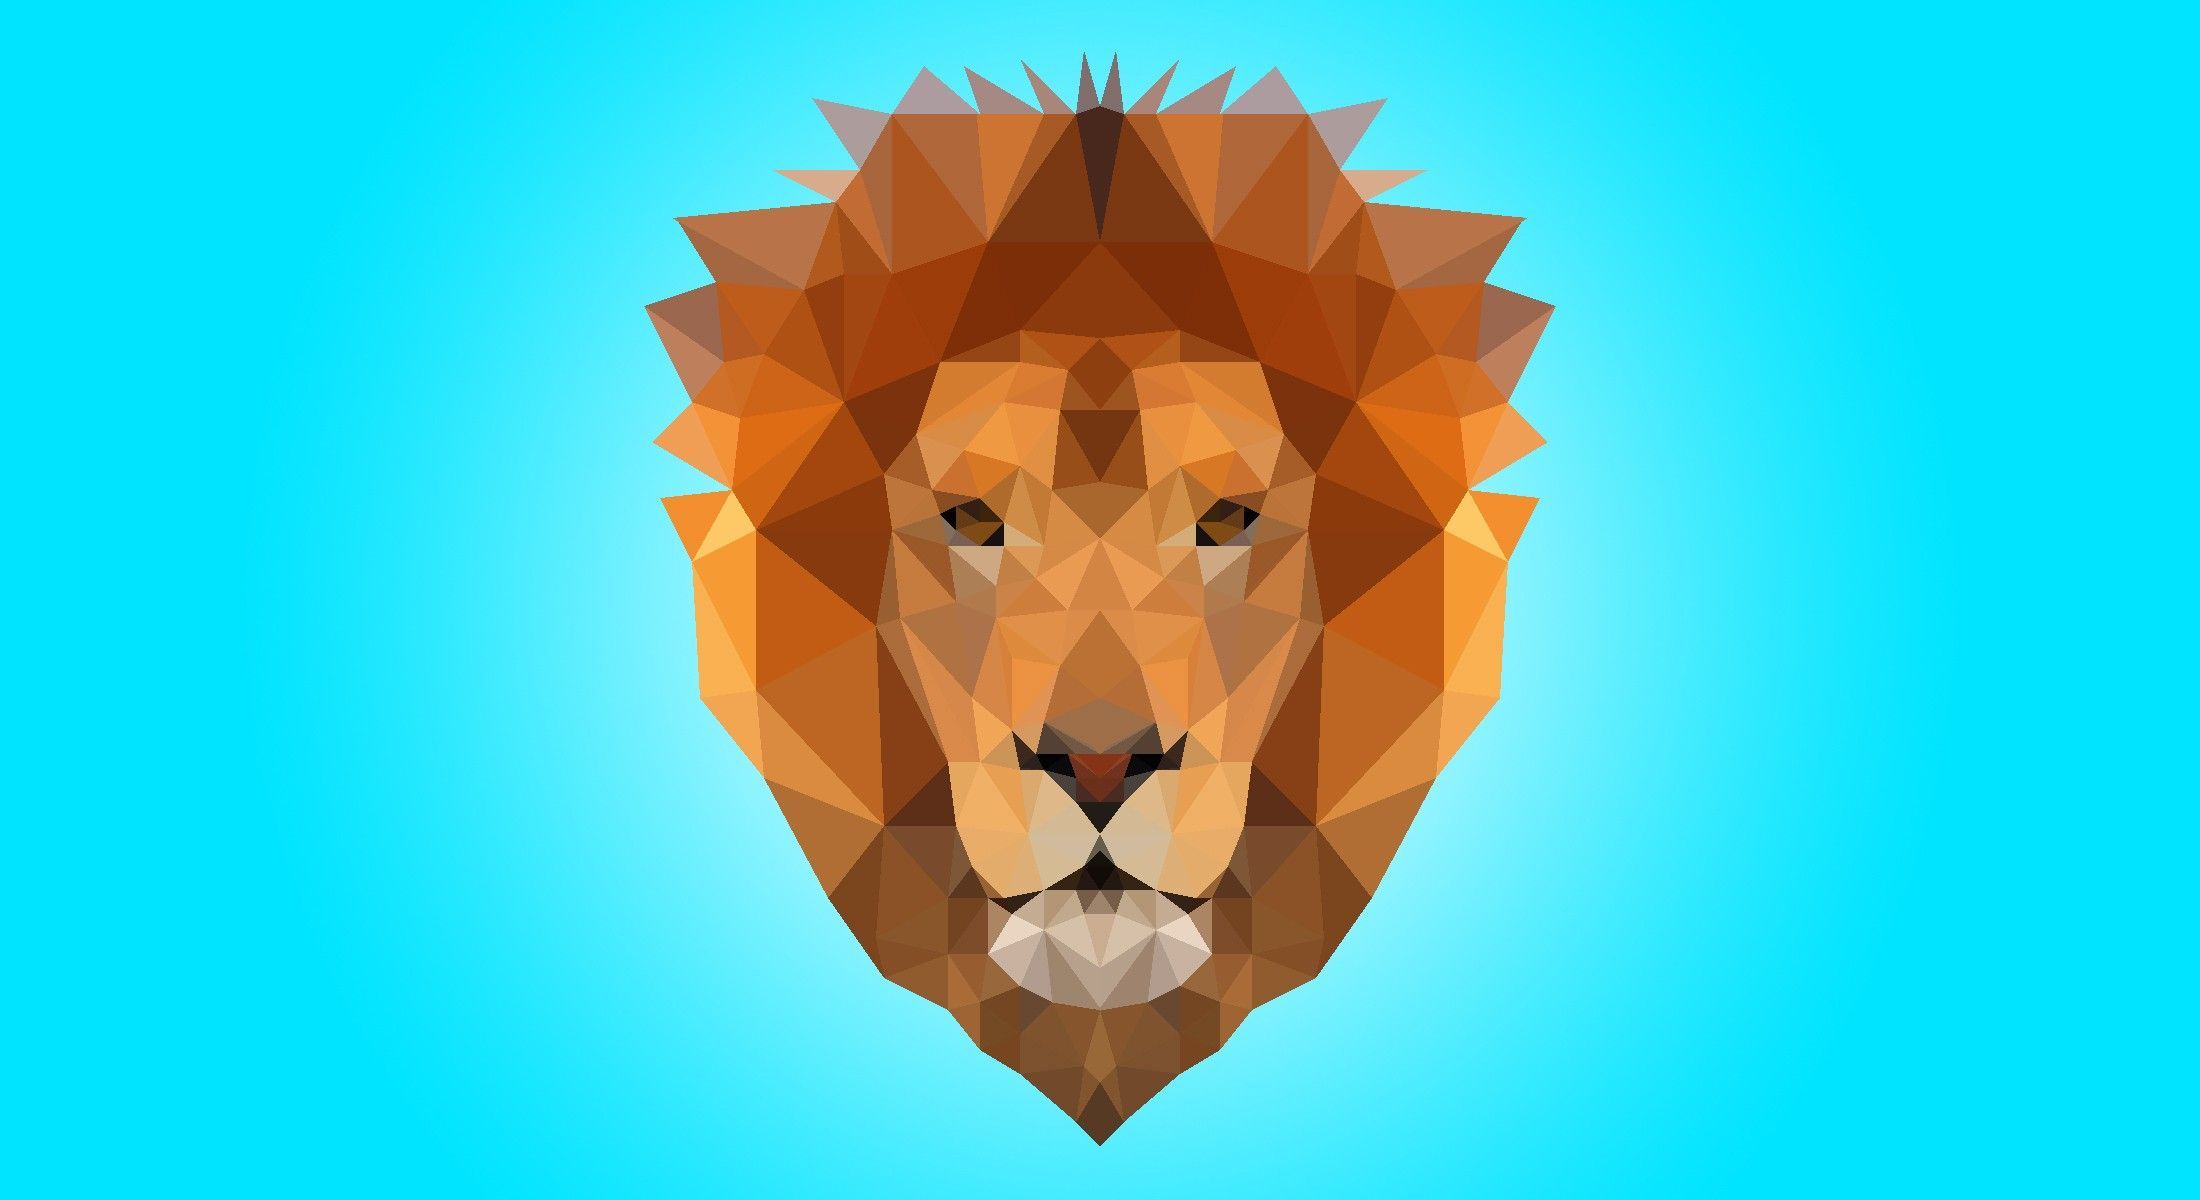 Geometric Lion Wallpaper. Geometric lion, Geometric animal wallpaper, Geometric lion wallpaper